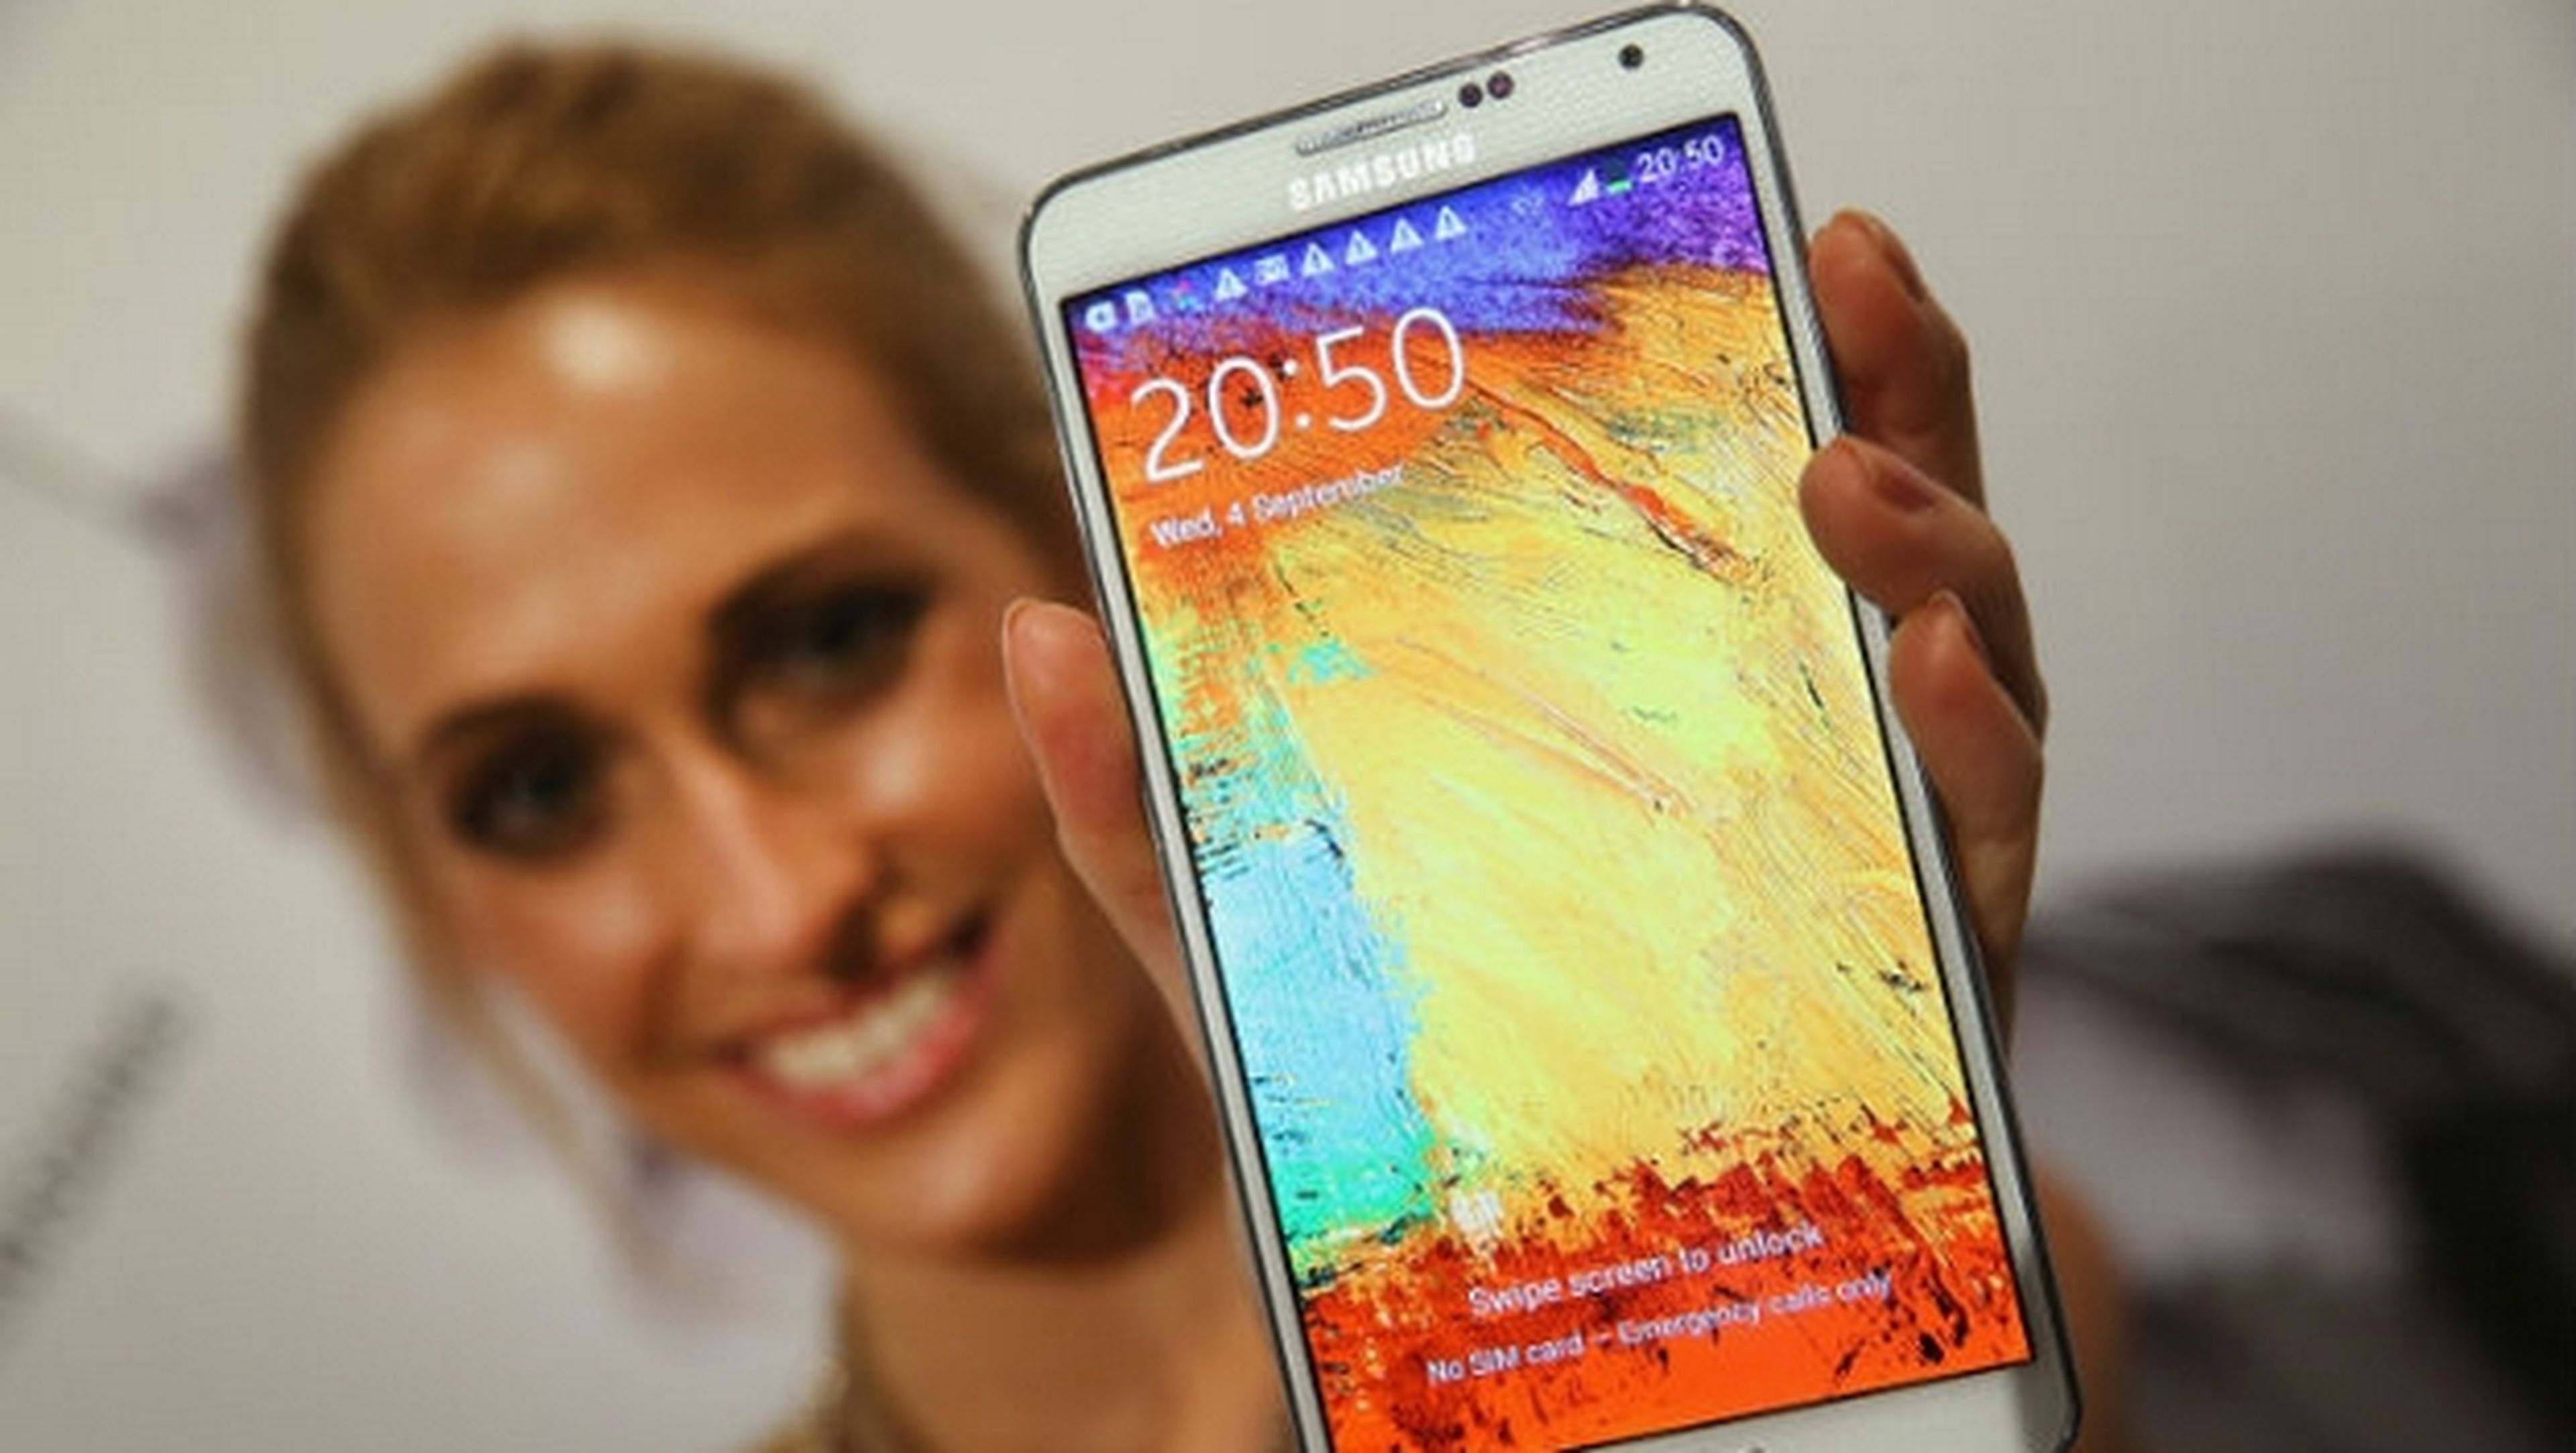 Samsung presenta el nuevo Samsung Galaxy Note 3 Neo y Neo LTE+, un phablet con lápiz táctil